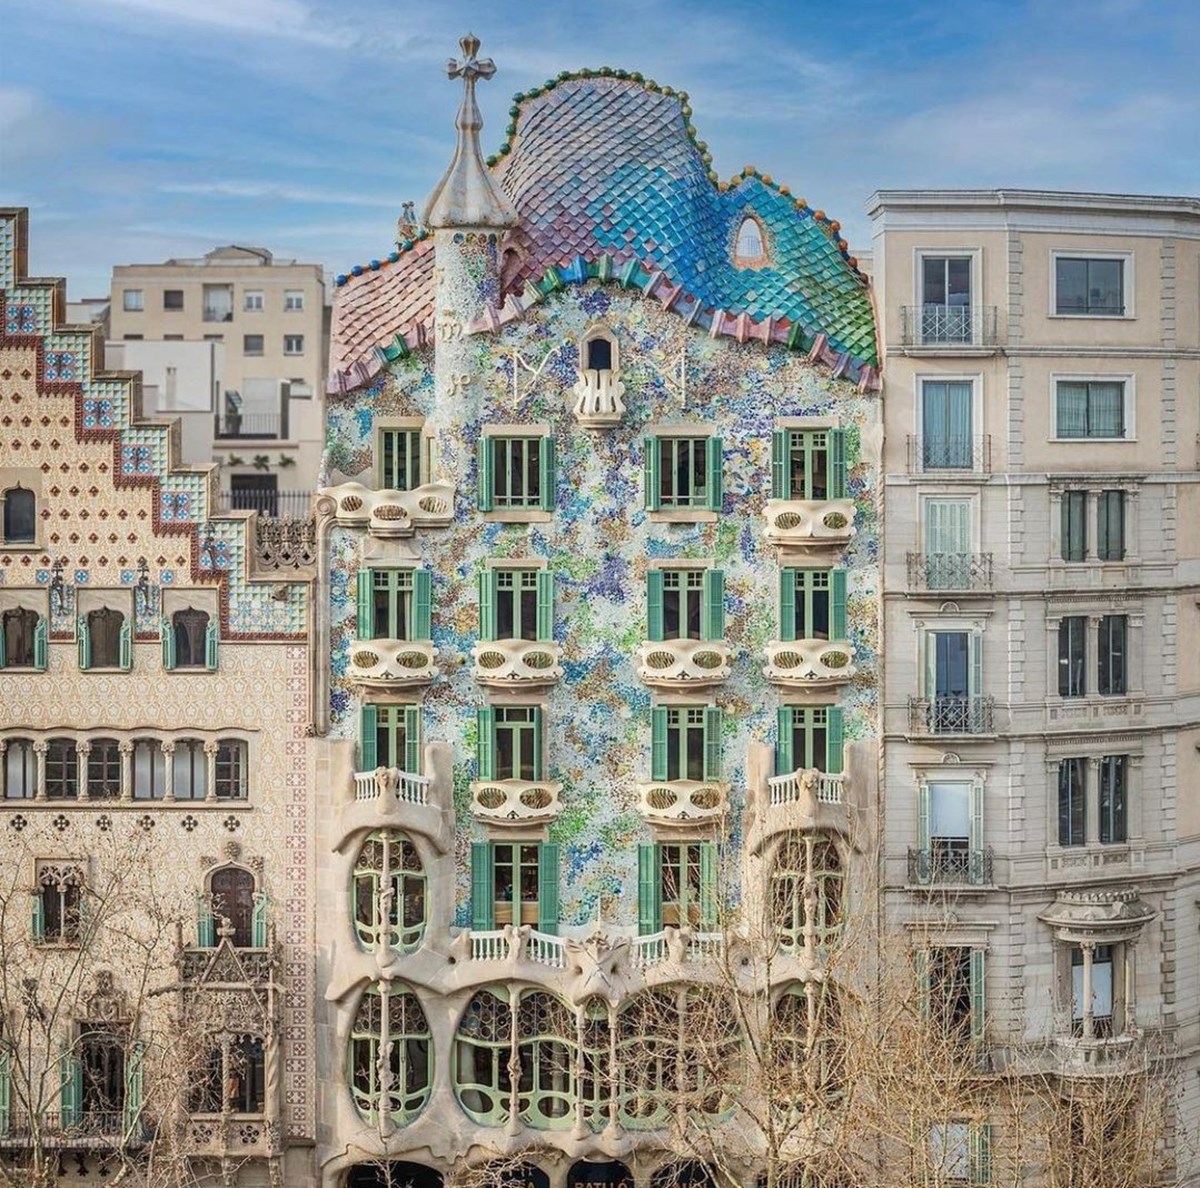 Ünlü mimar Antoni Gaudi’nin Barcelona'daki simgesel eseri Casa Batllo